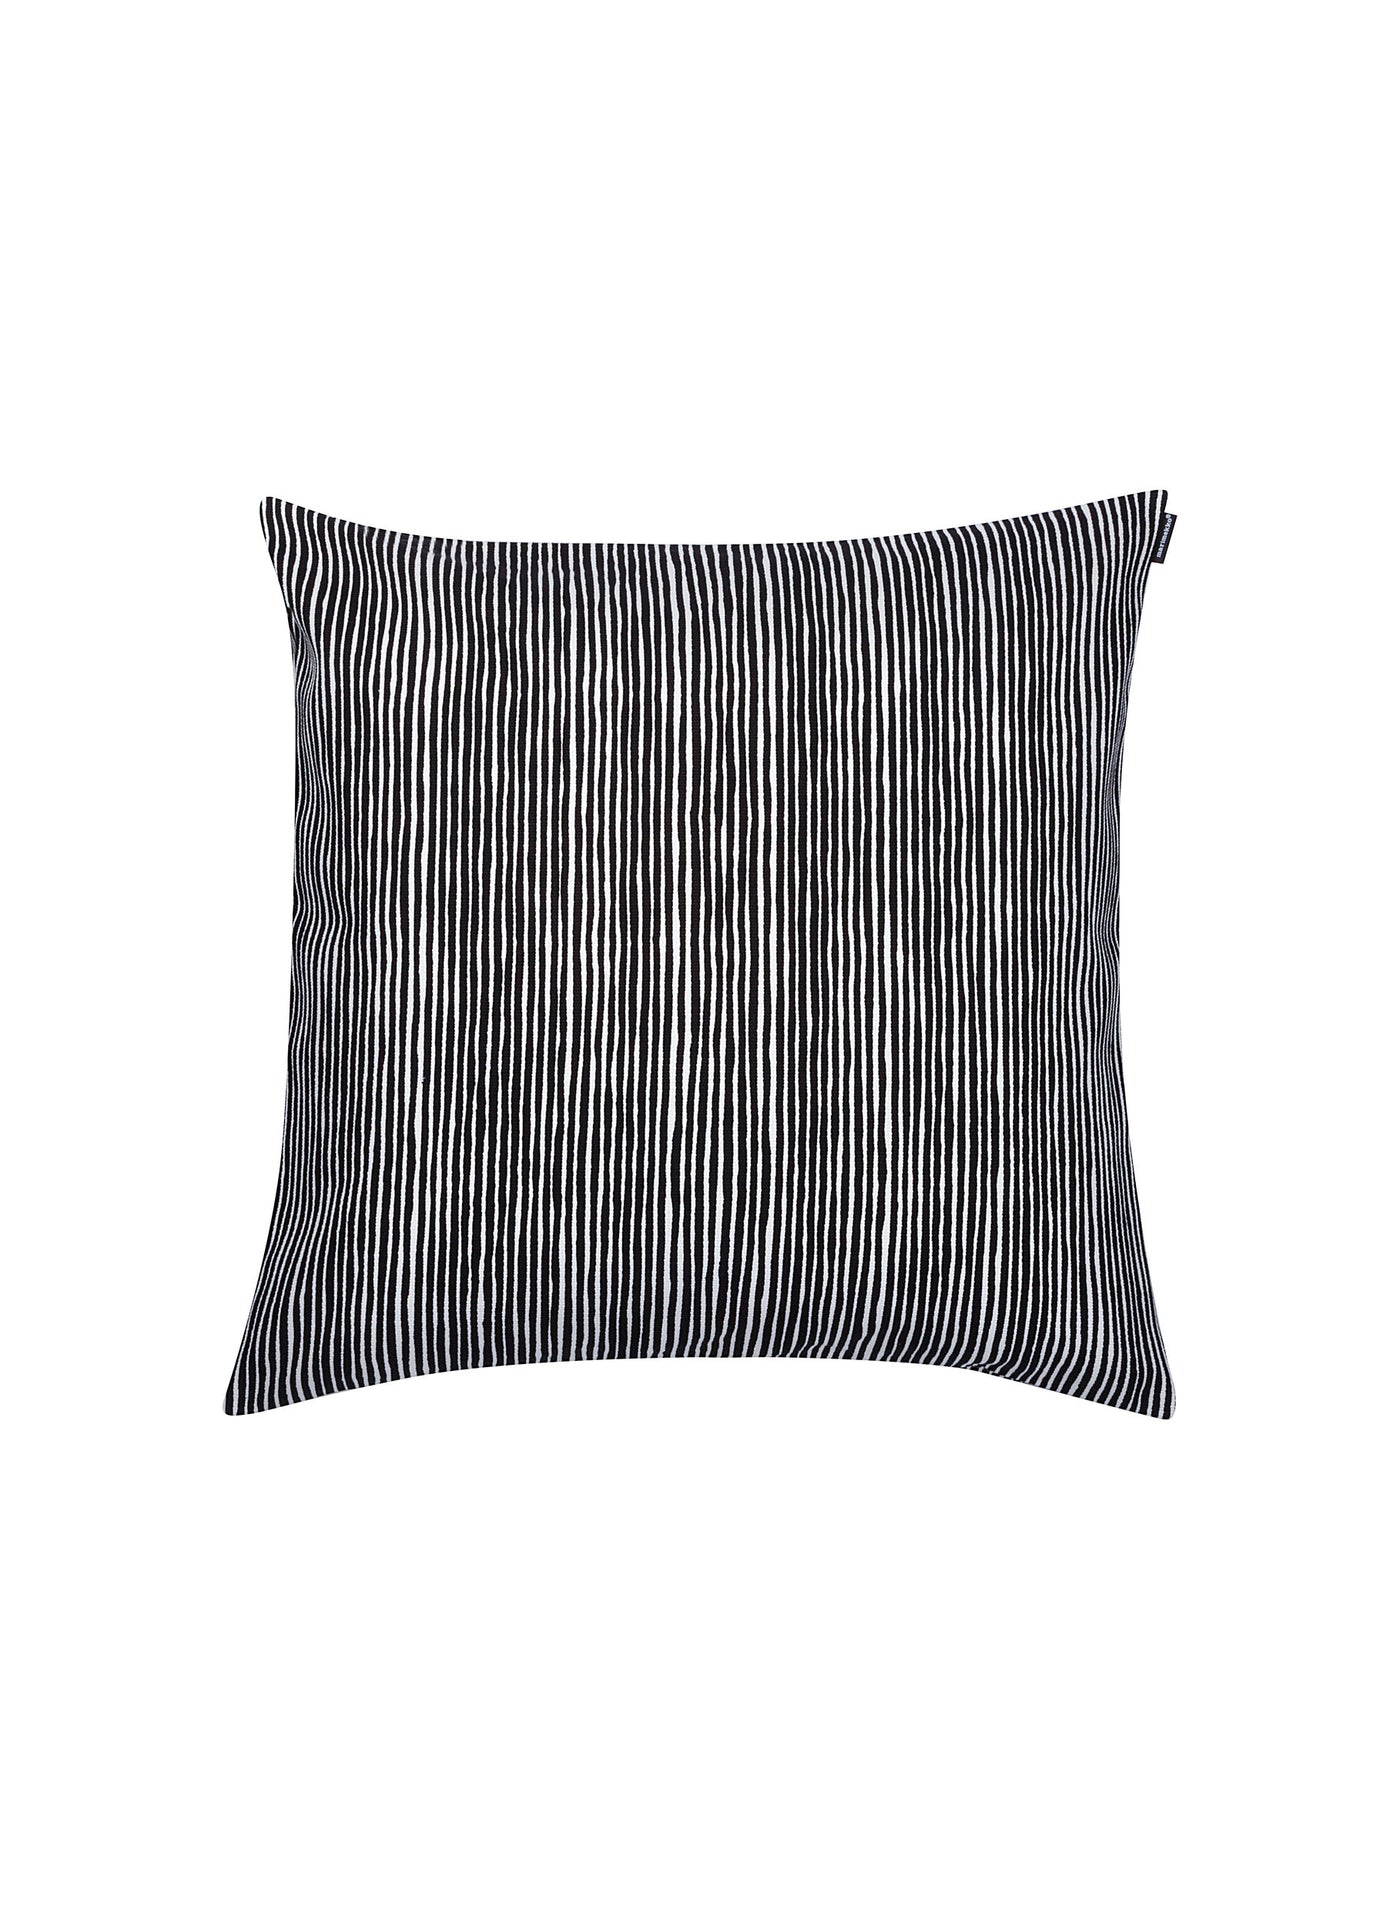 Marimekko Varvunraita cushion cover 50x50 cm